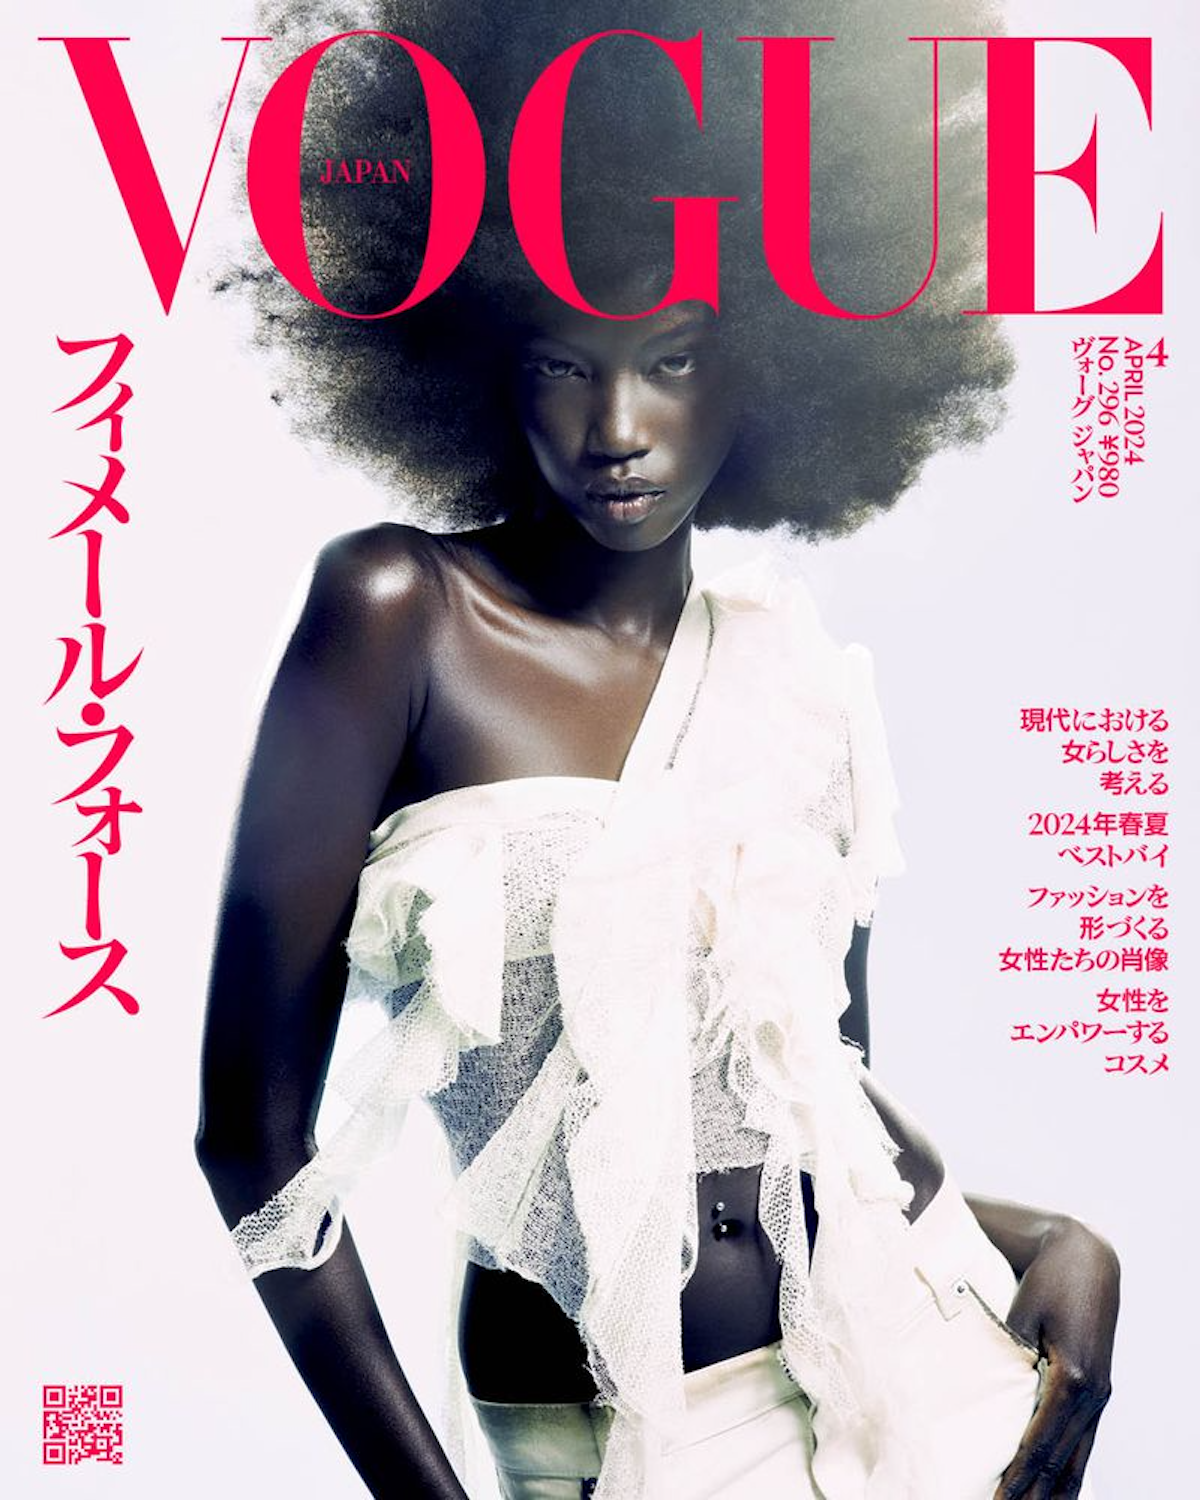 Anok-Yai-by-Heji-Shin-Vogue-Japan-April-2024-Cover.png